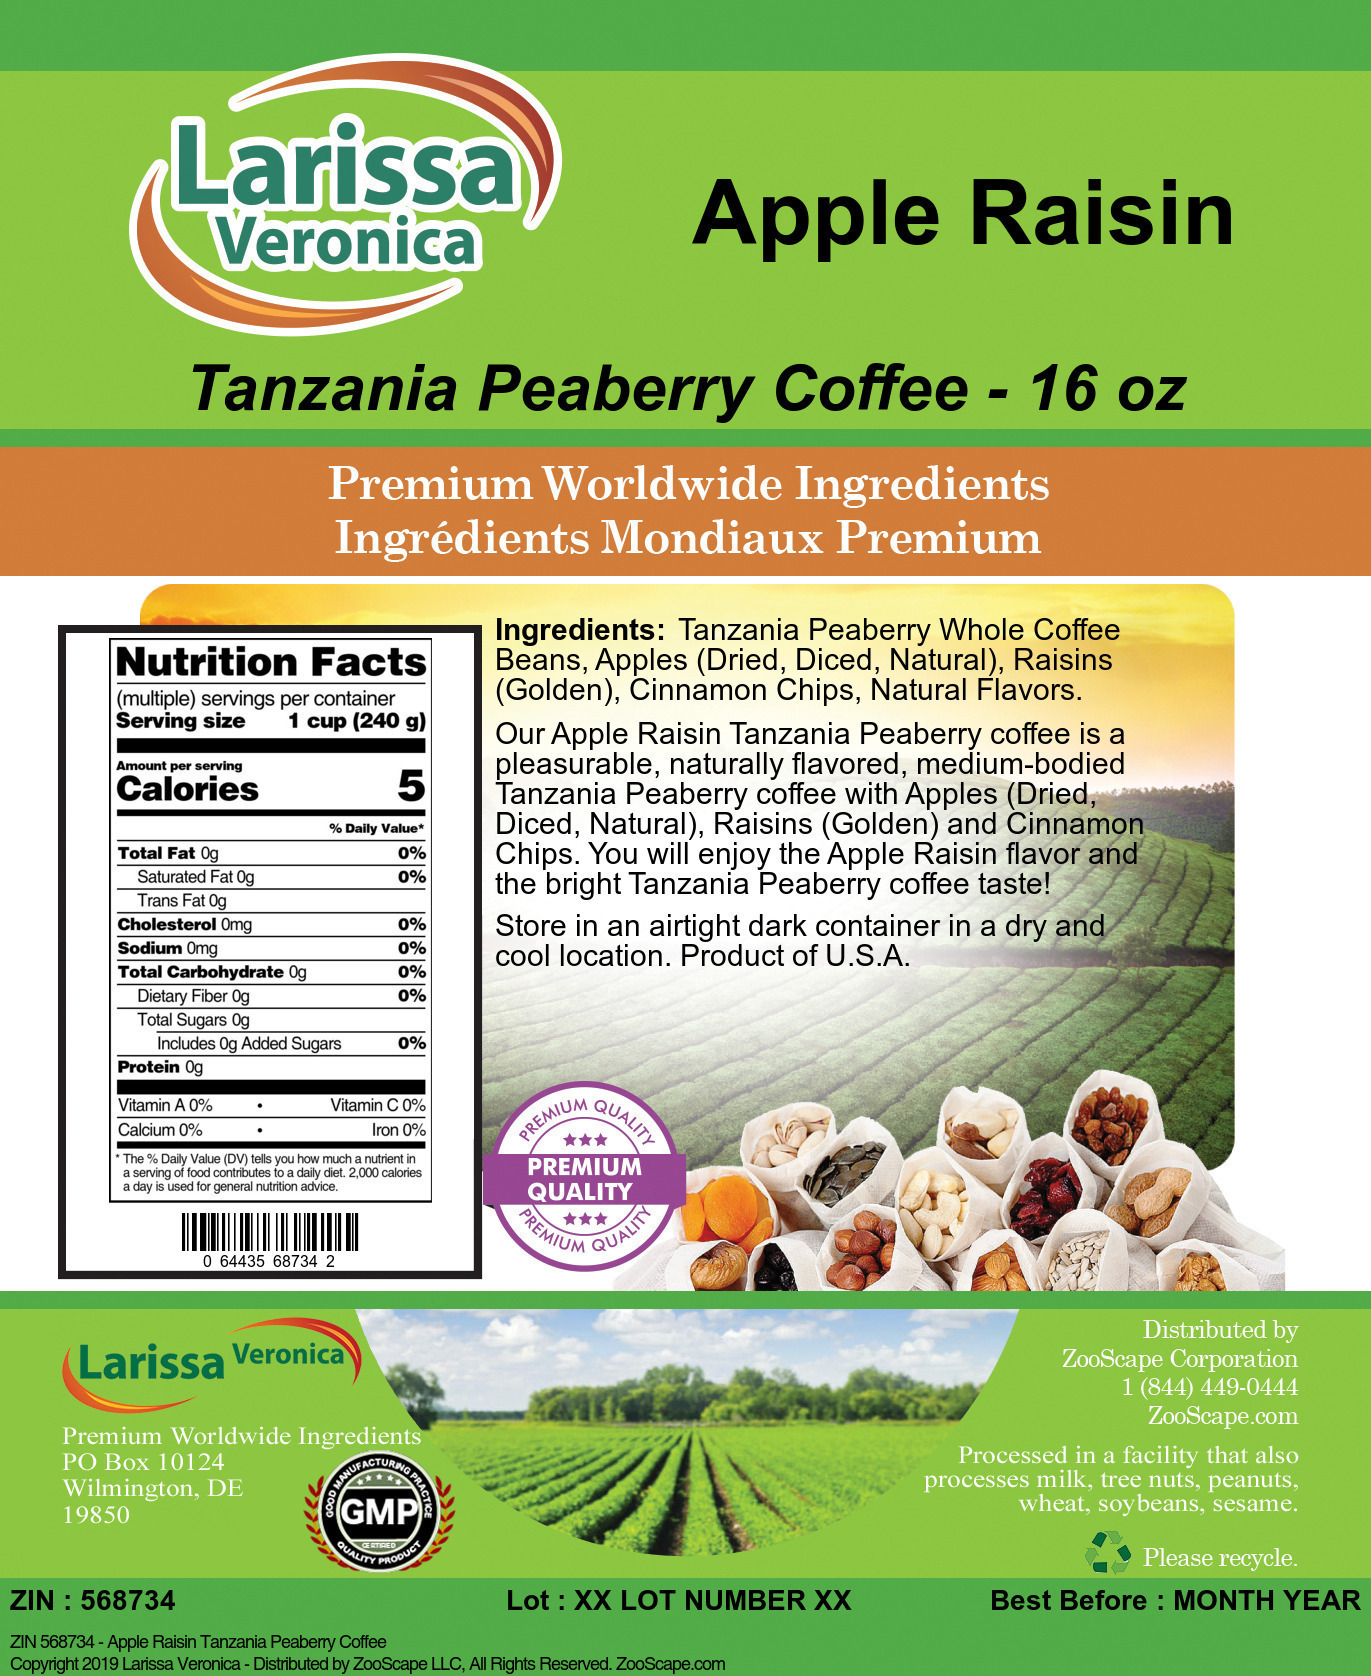 Apple Raisin Tanzania Peaberry Coffee - Label